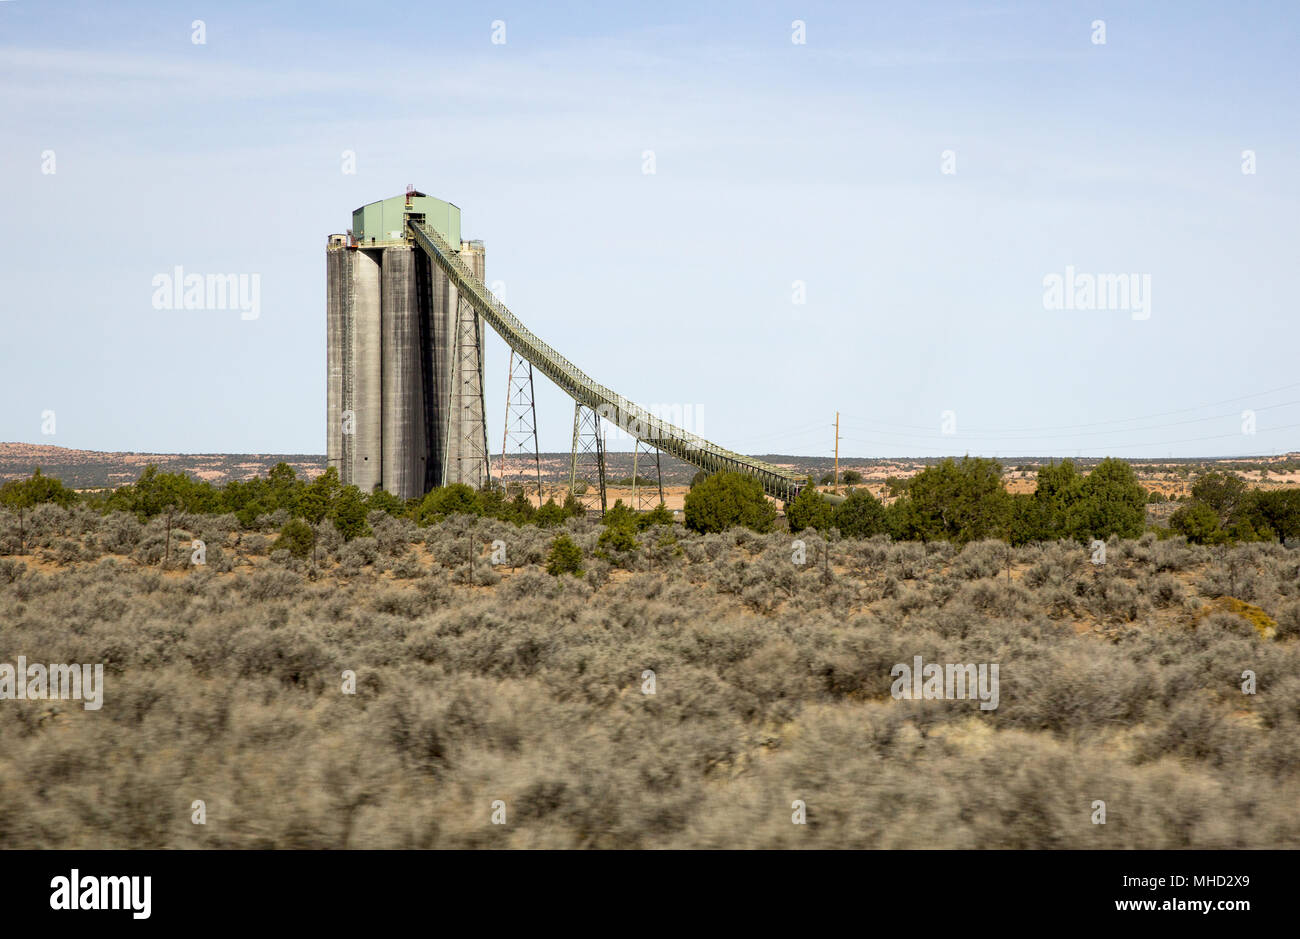 Los silos de almacenamiento de carbón Black Mesa y correa transportadora,  el carbón de la mina a Kayenta es cargado en trenes en los silos, en el  norte de Arizona, Estados Unidos